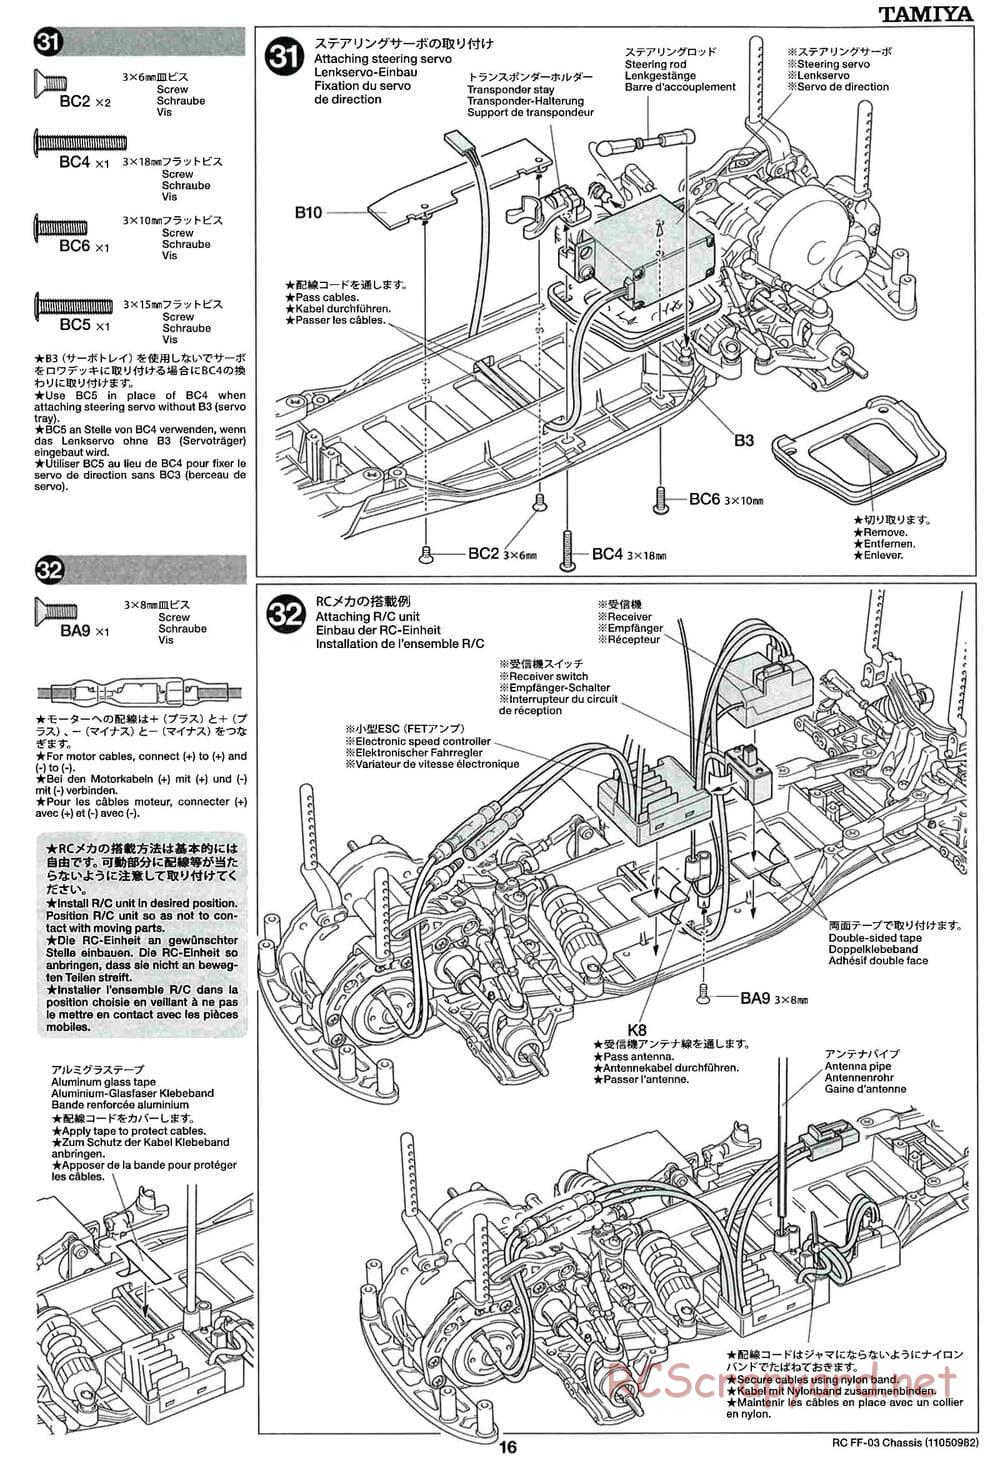 Tamiya - Honda CR-Z - FF-03 Chassis - Manual - Page 16